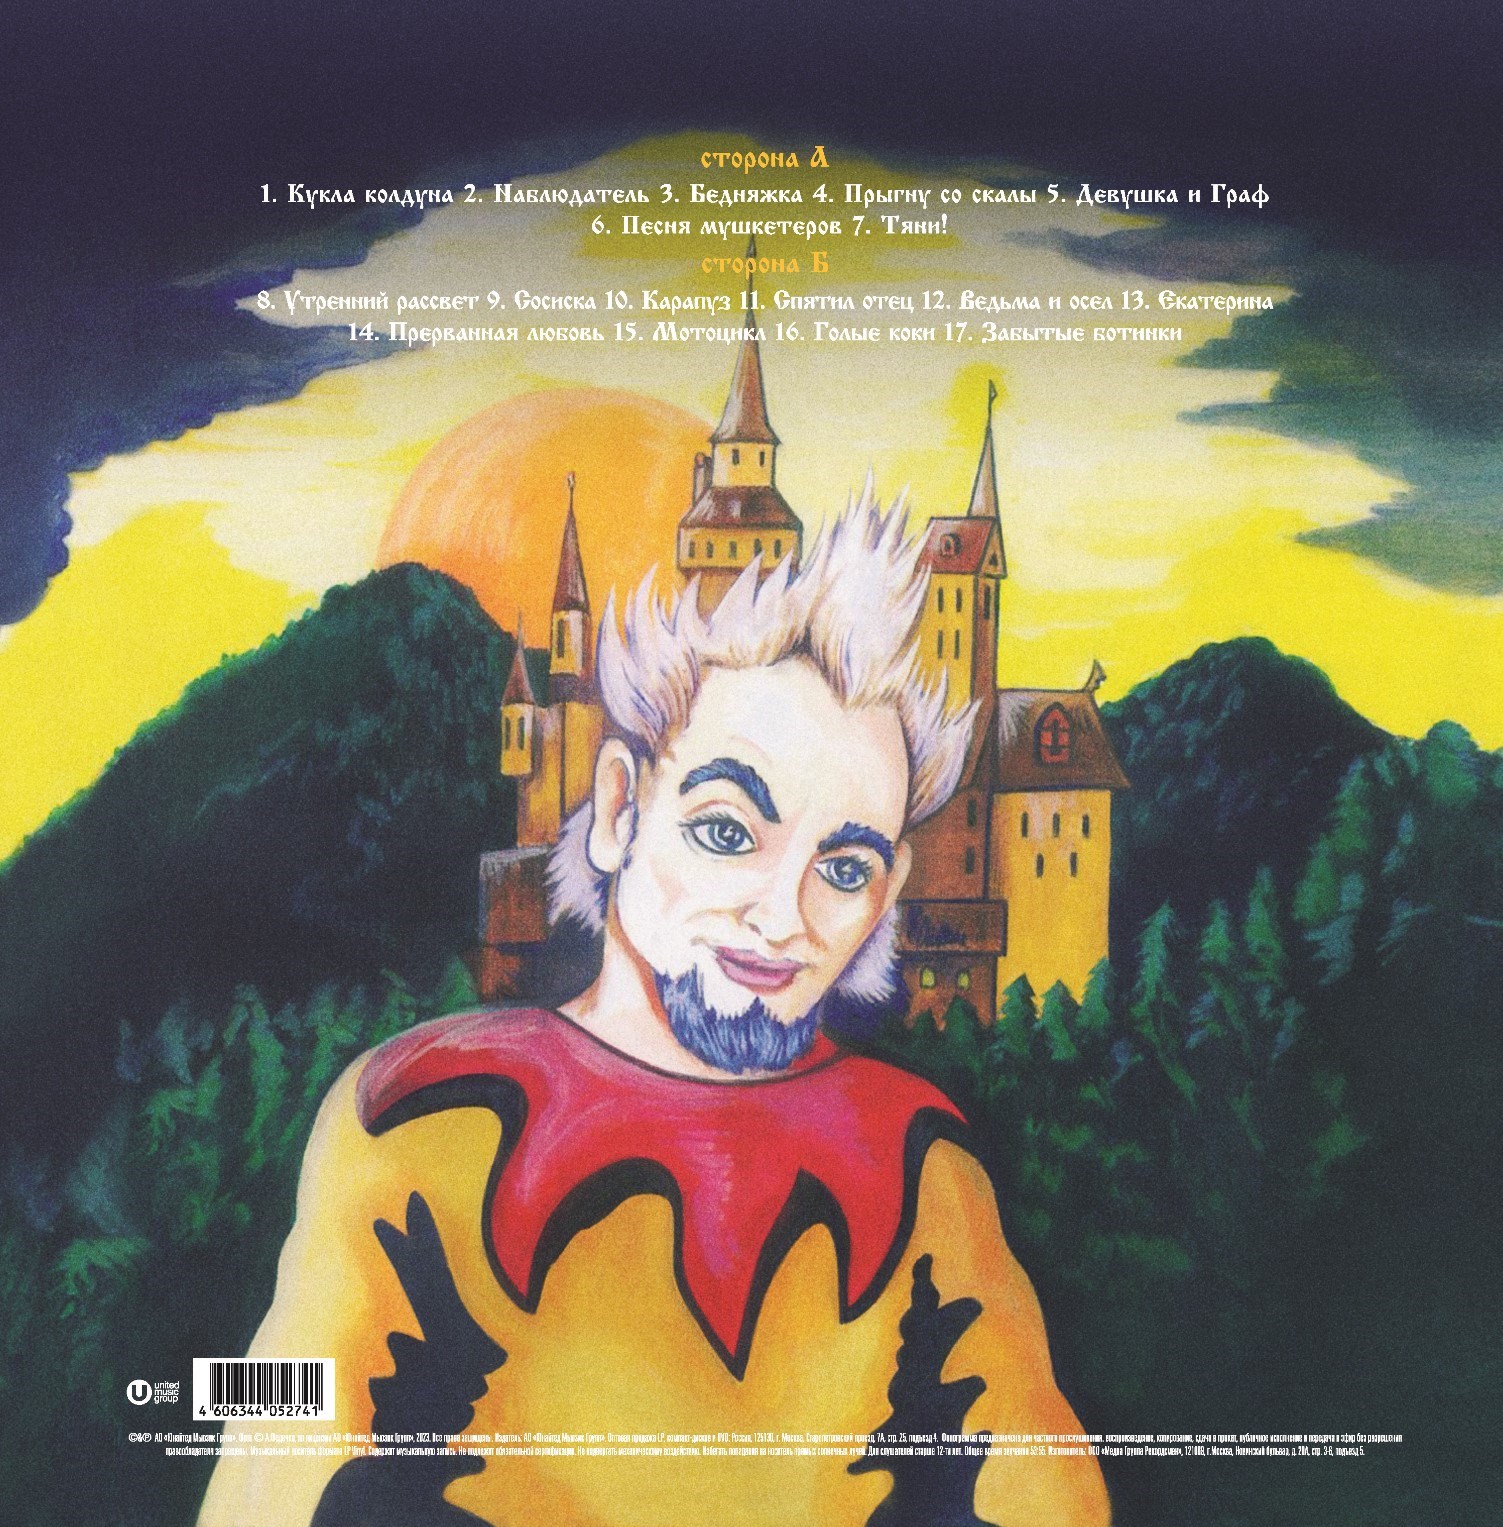 Король И Шут - Акустический Альбом [Black Vinyl + Постер] (UMG23 LP-5274)